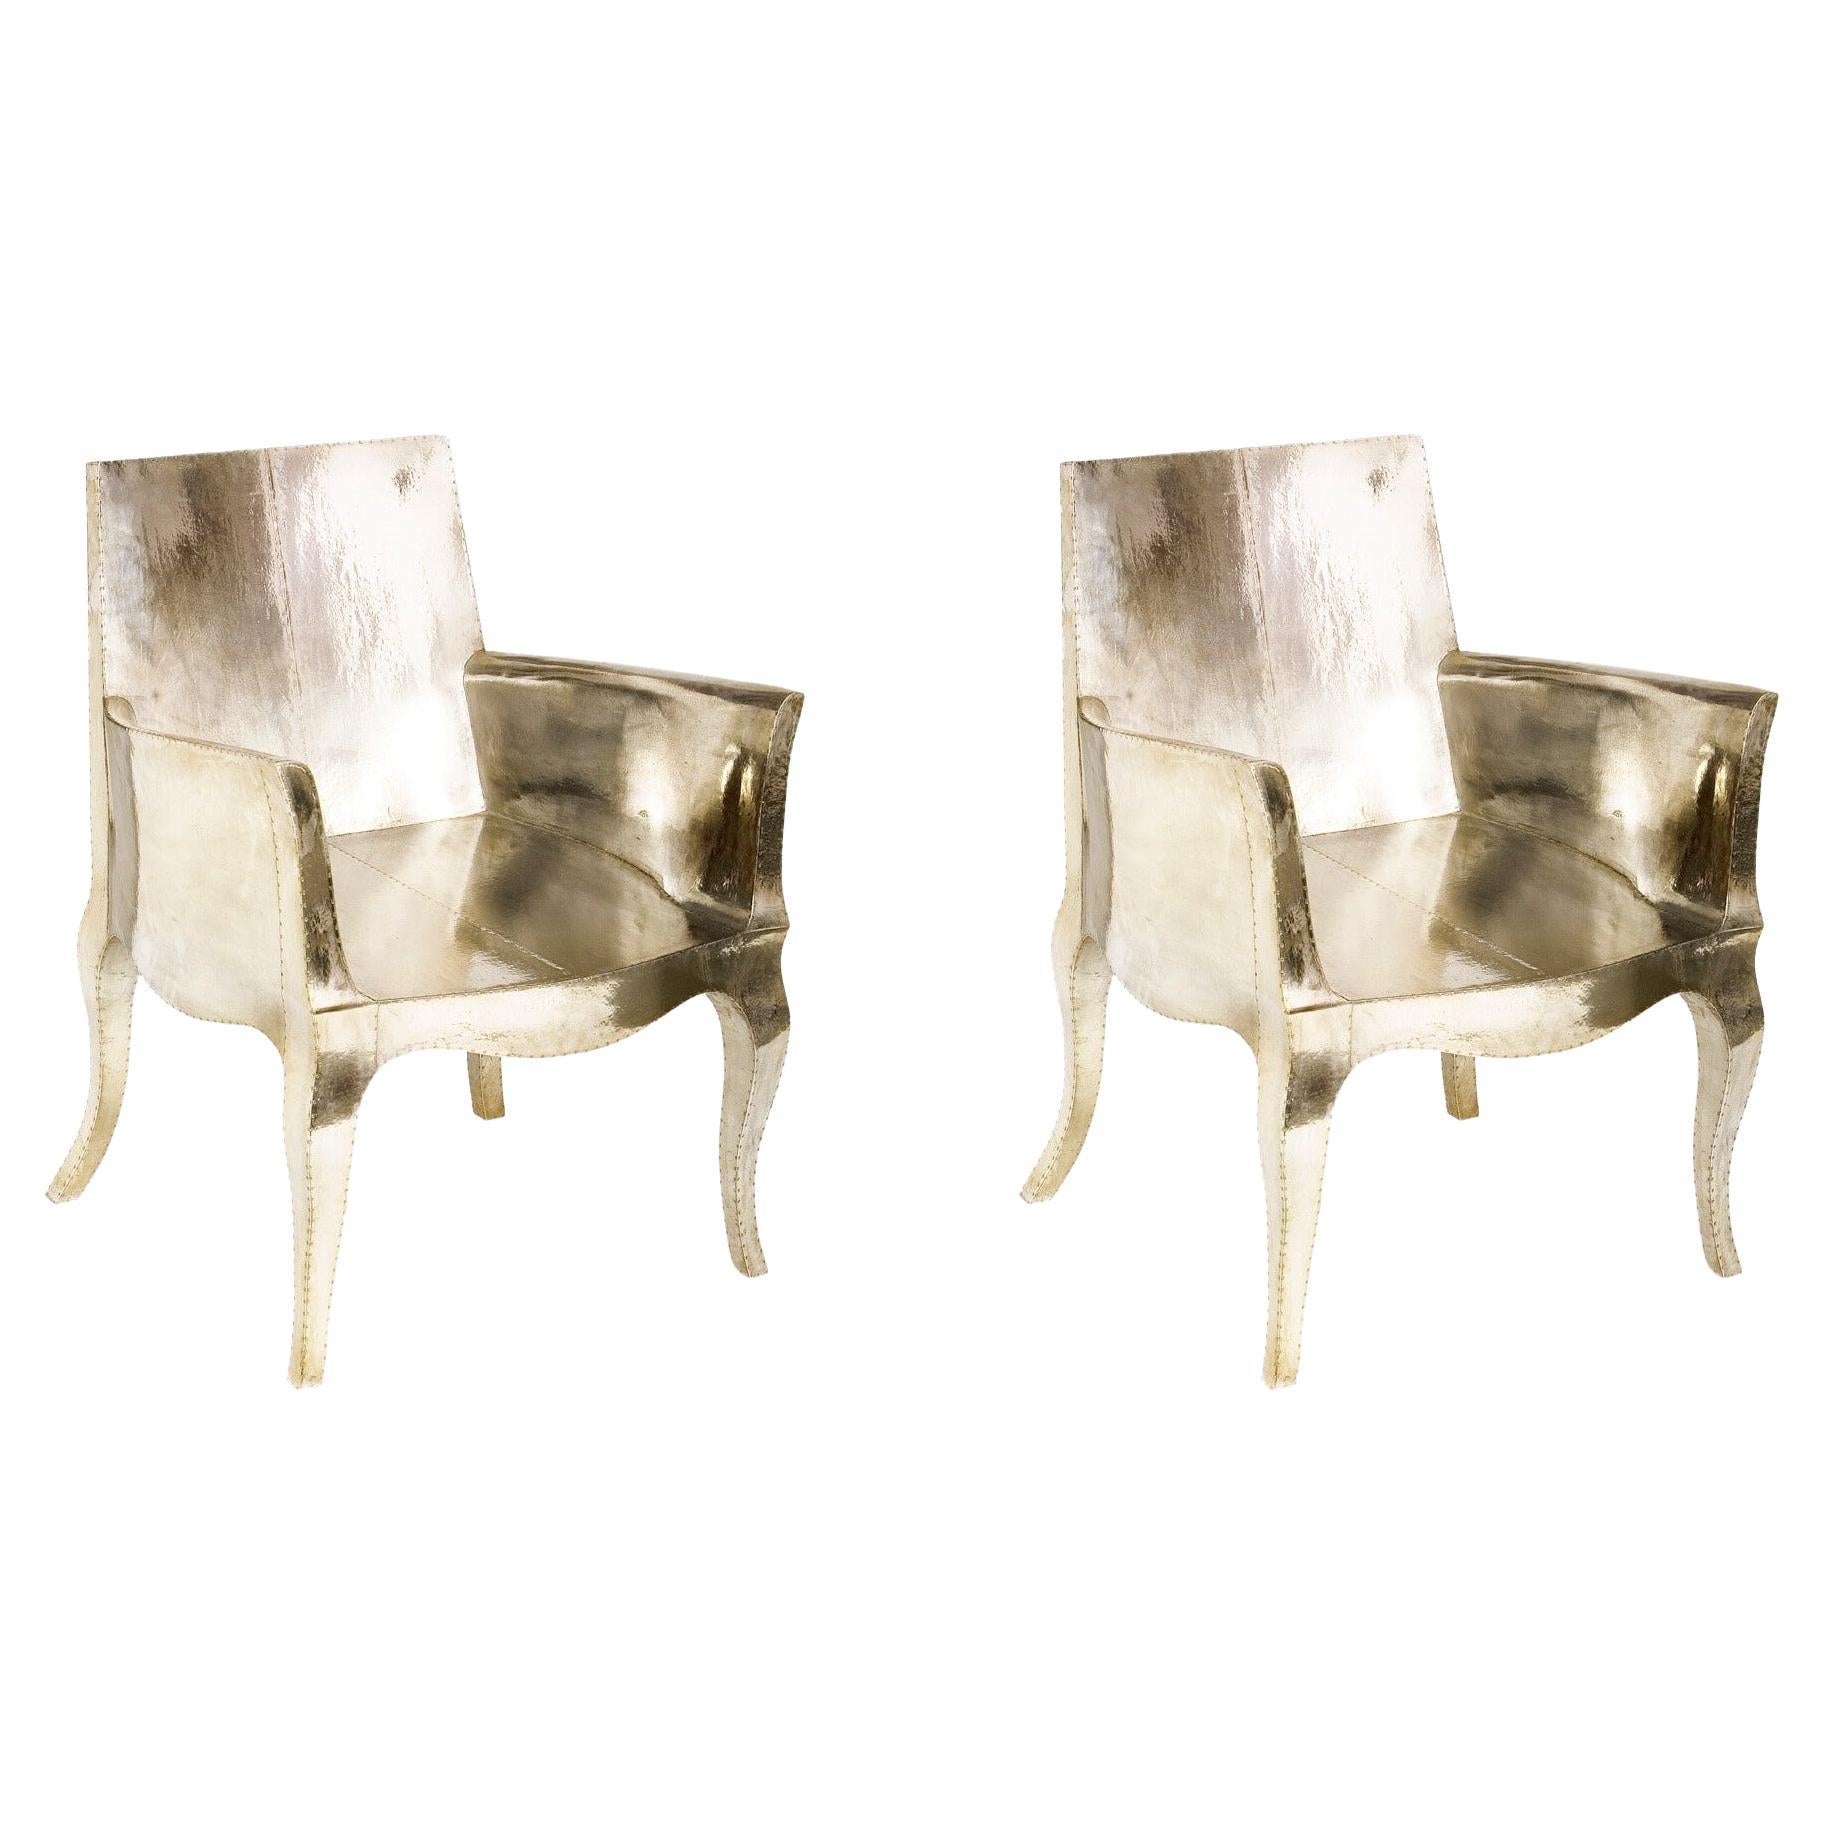 Paire de chaises Art Nouveau conçues par Paul Mathieu pour Stephanie Odegard